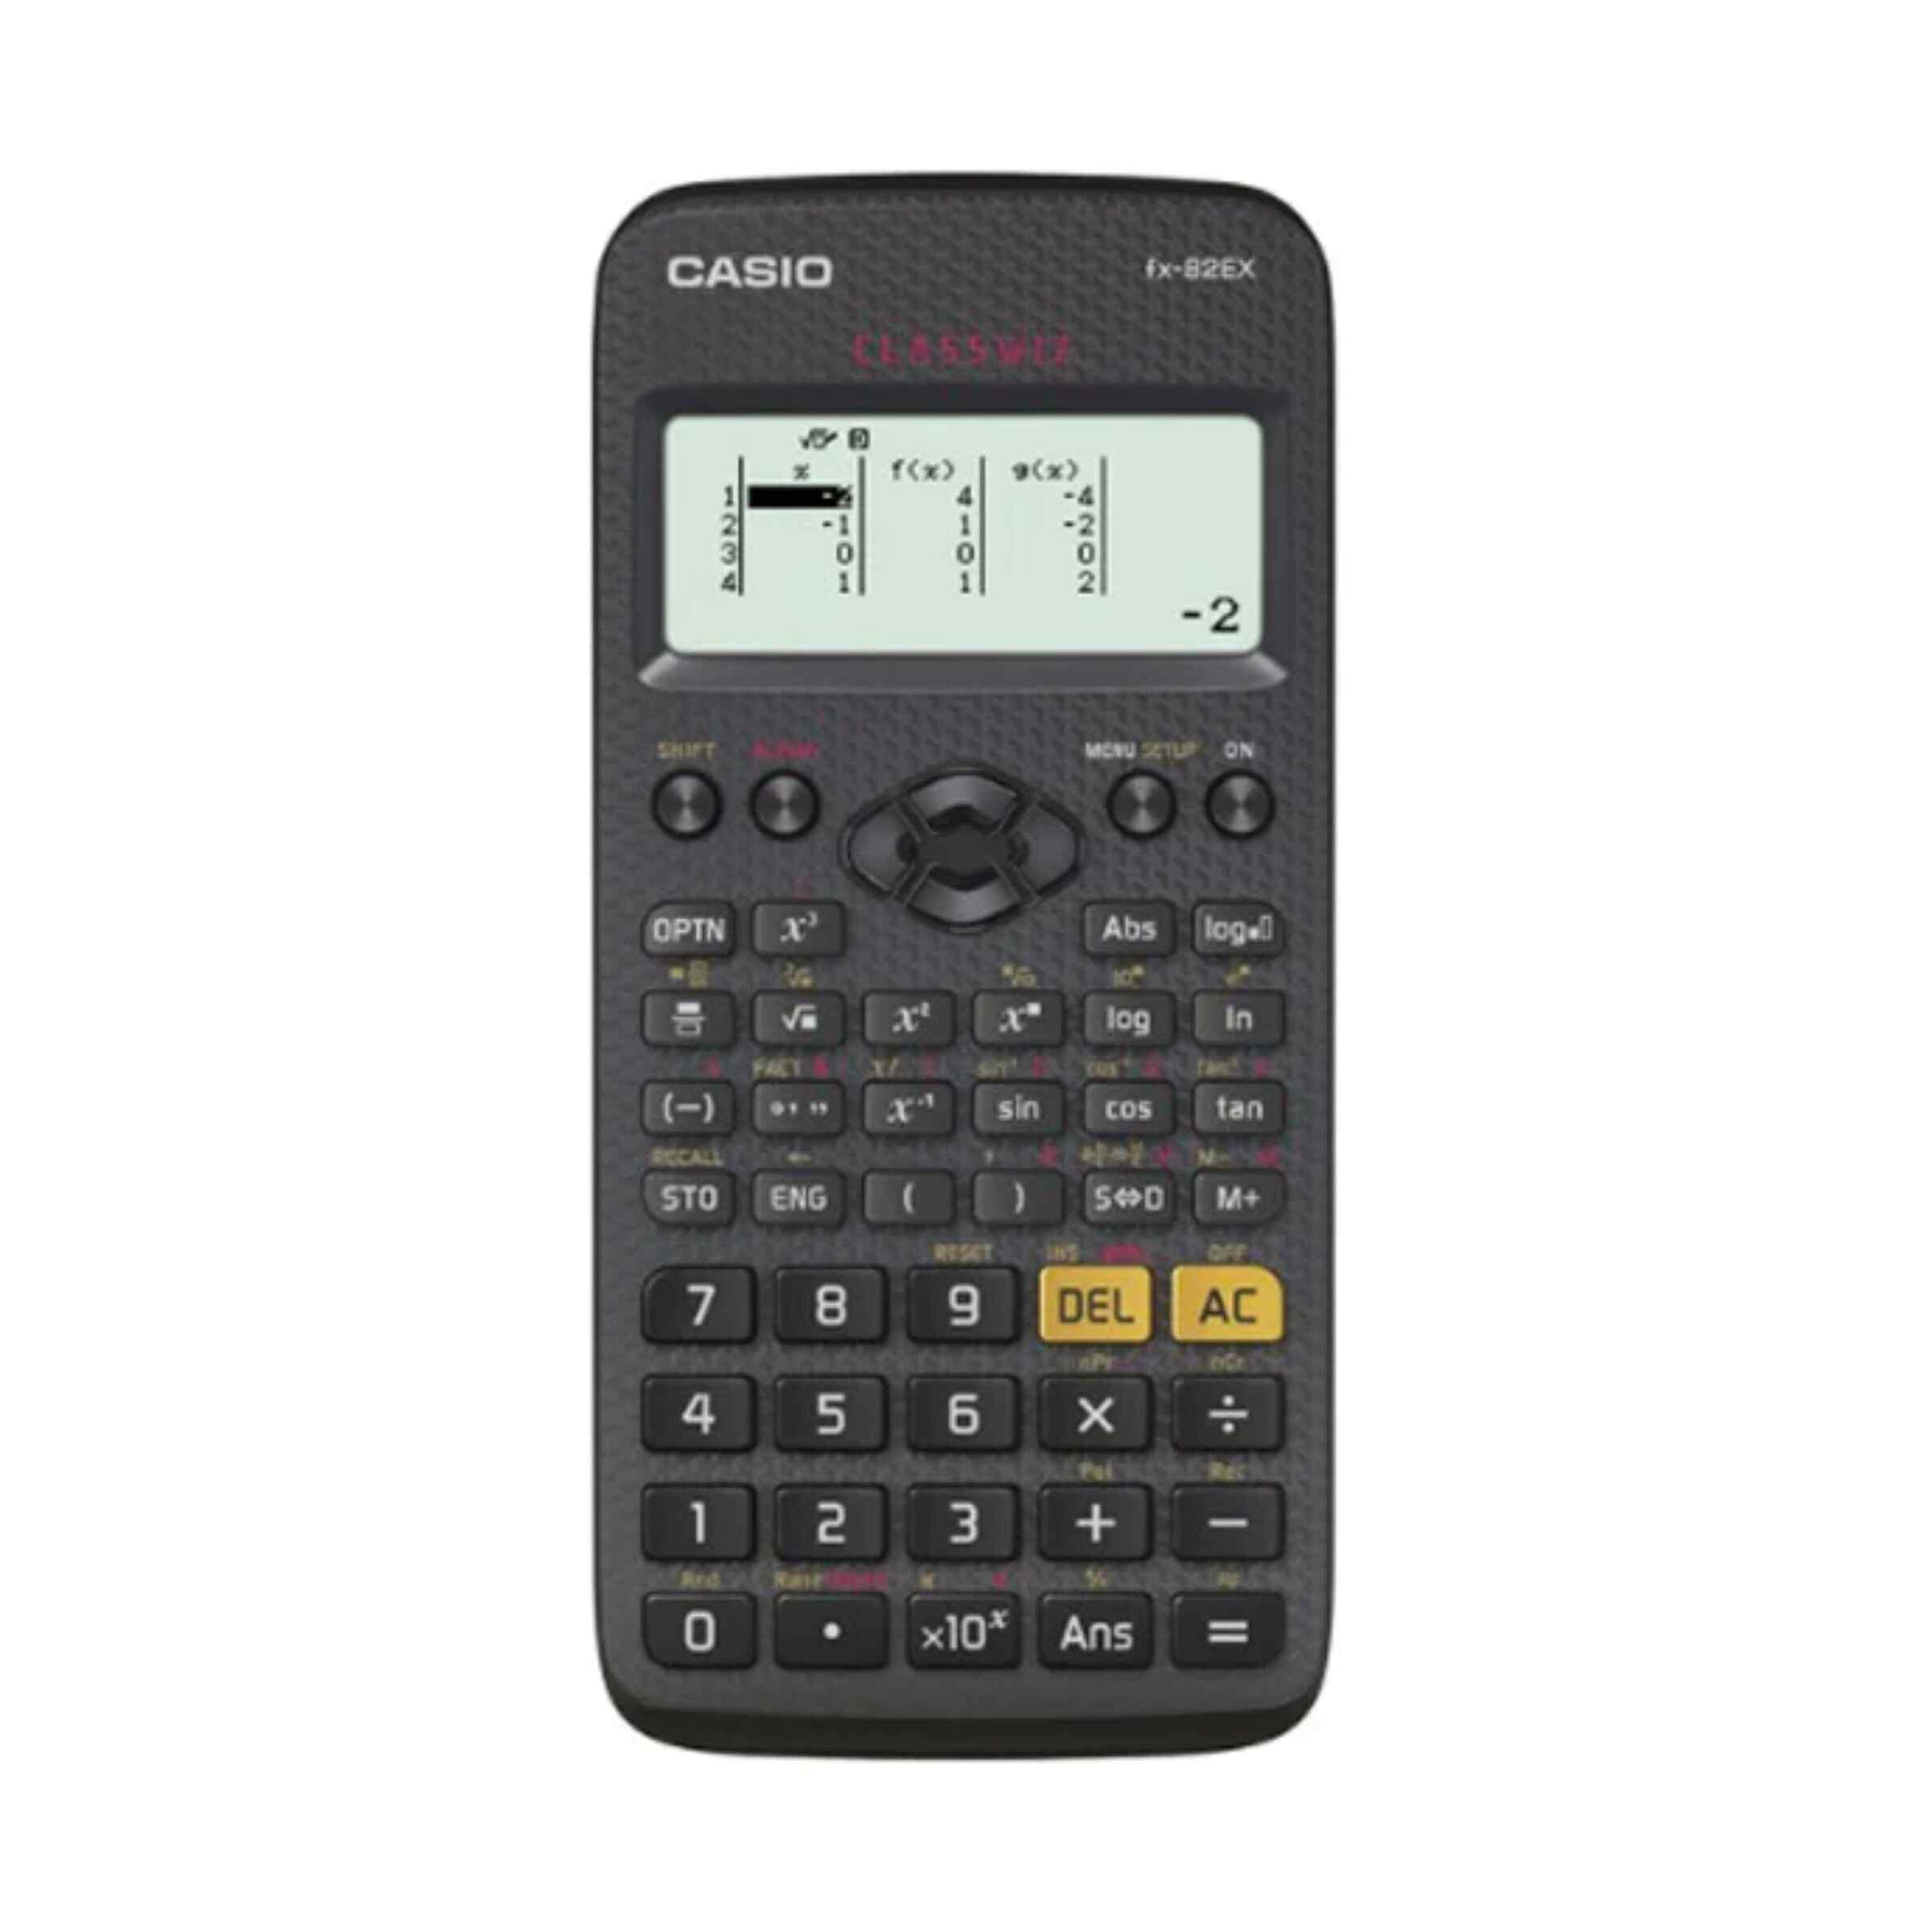 Casio Original Scientific  Calculator Fx-82 EX